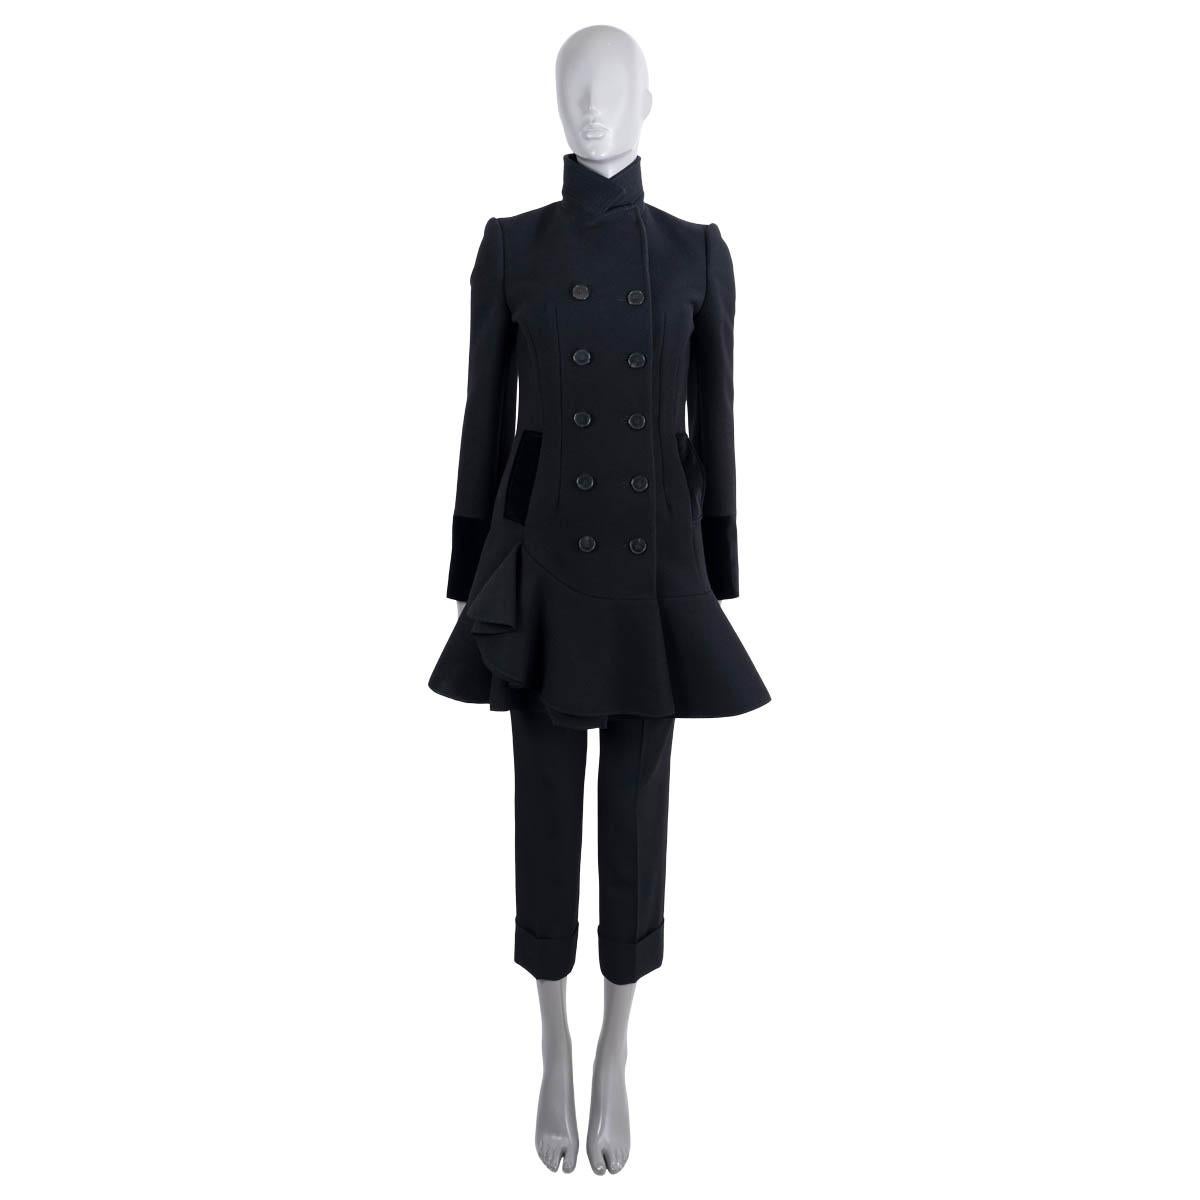 100% authentischer Alexander McQueen Zweireiher-Mantel aus schwarzer Wolle (100%). Mit taillierter Silhouette, hohem Halsausschnitt, gerüschtem Saum und zwei Pattentaschen an der Taille. Taschenklappen und Manschetten sind aus schwarzem Baumwollsamt